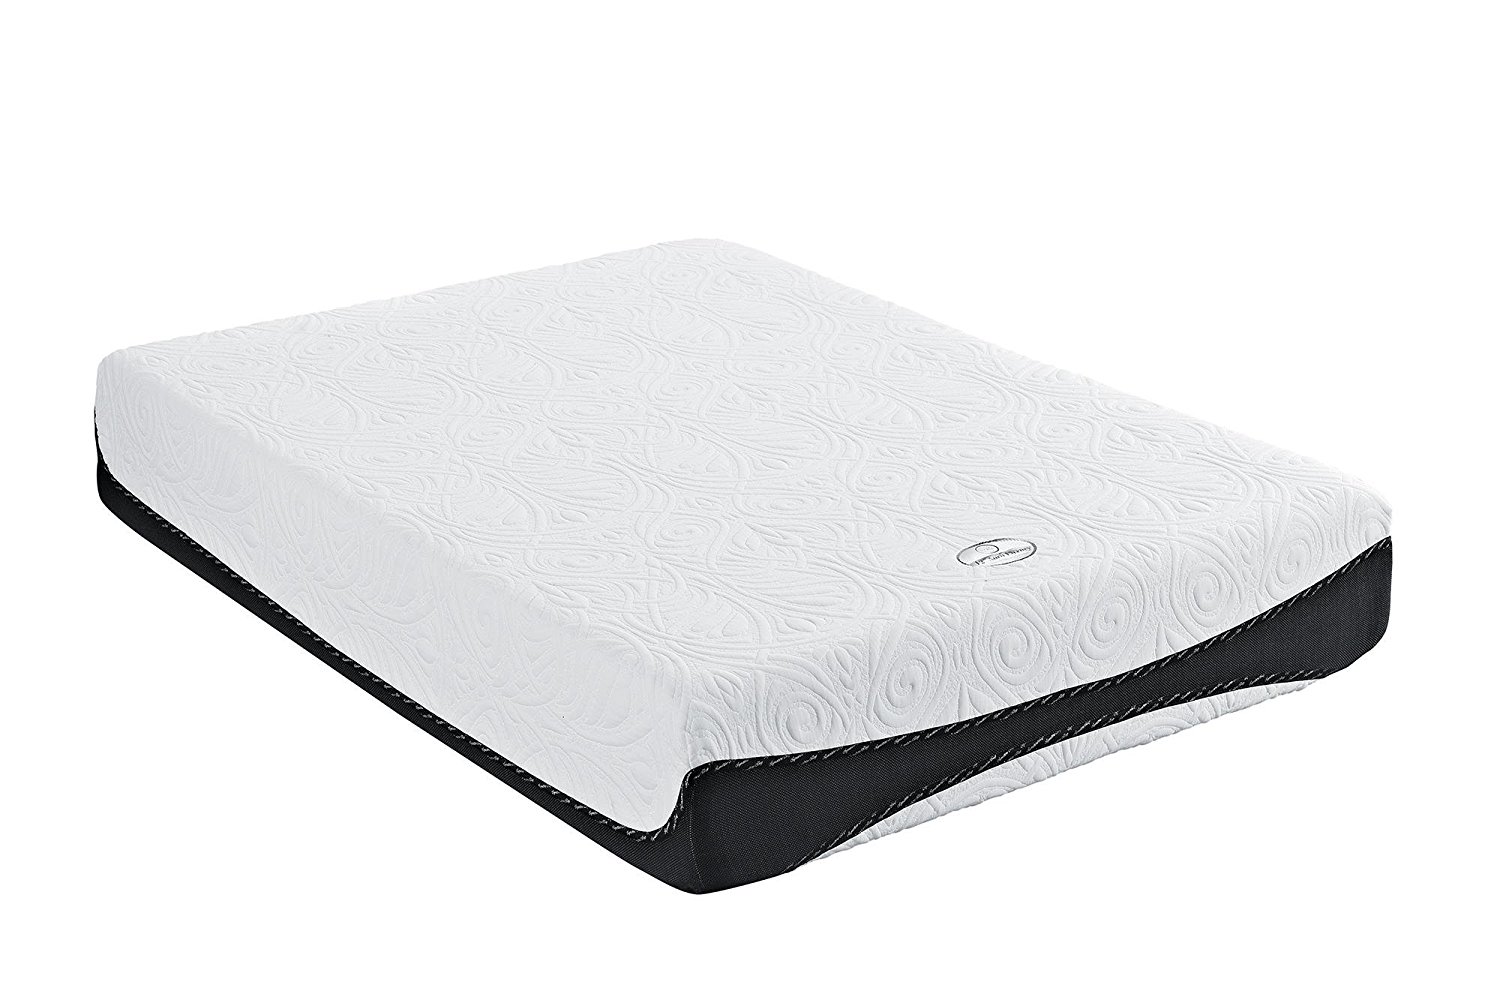 natural sleep memory foam mattress reviews